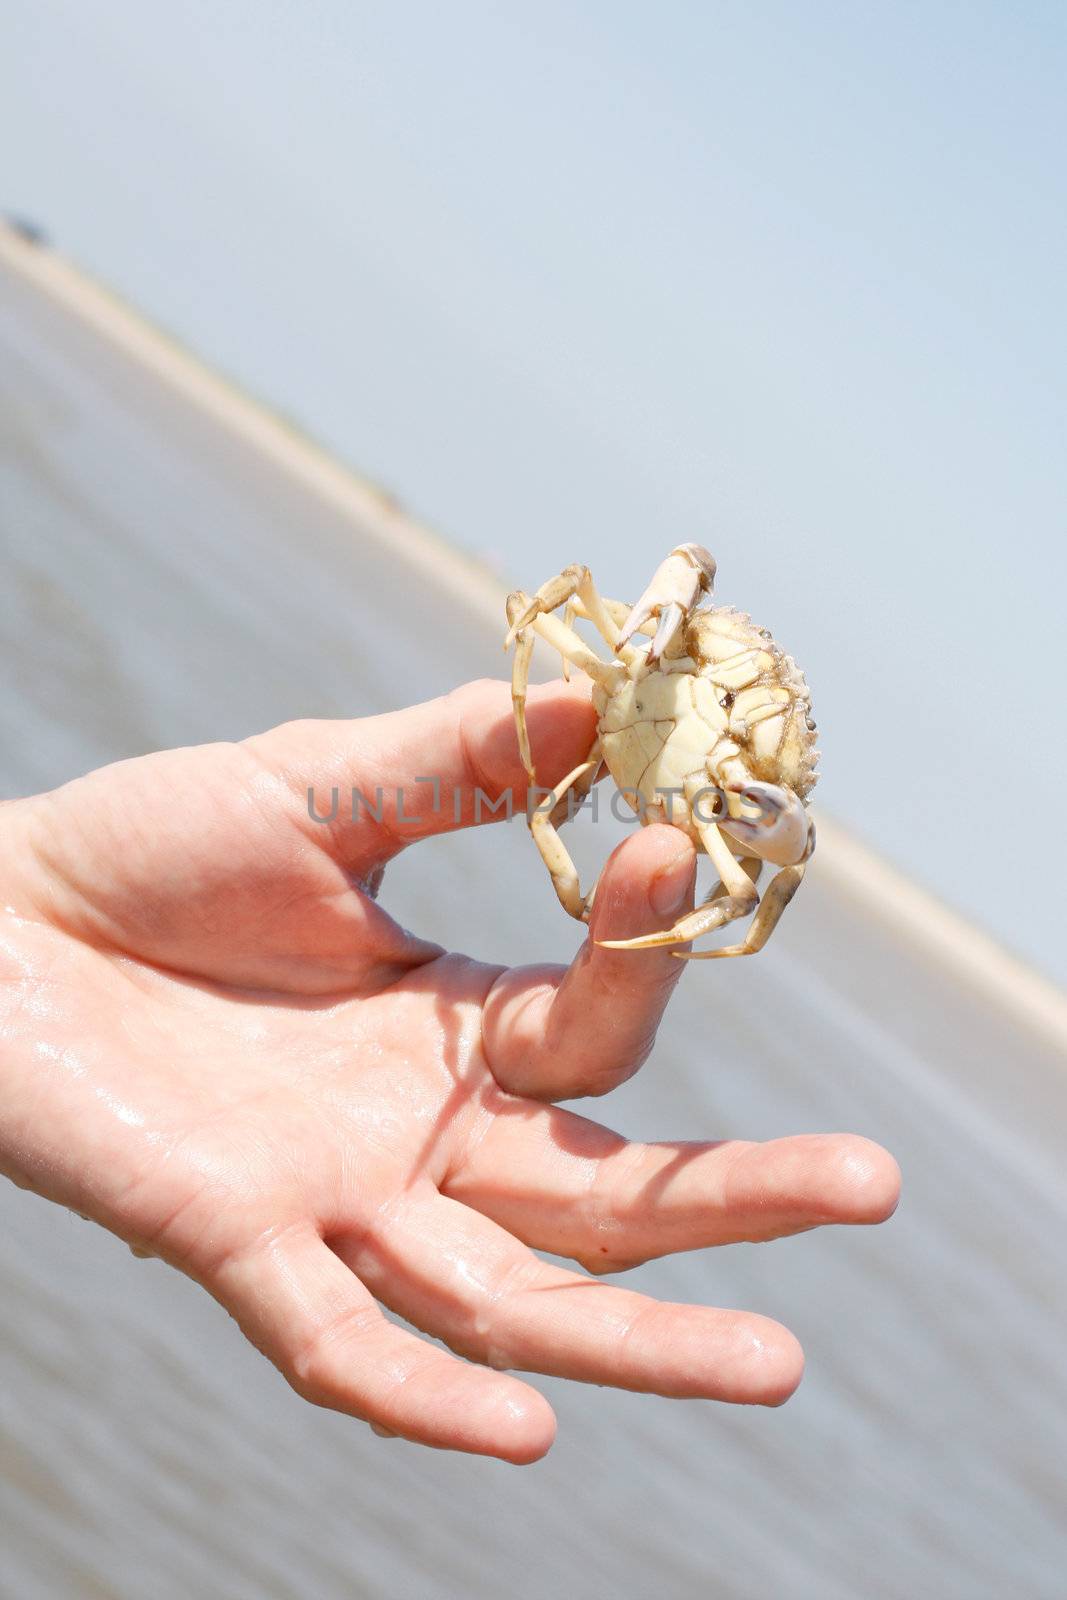 Crab by leeser